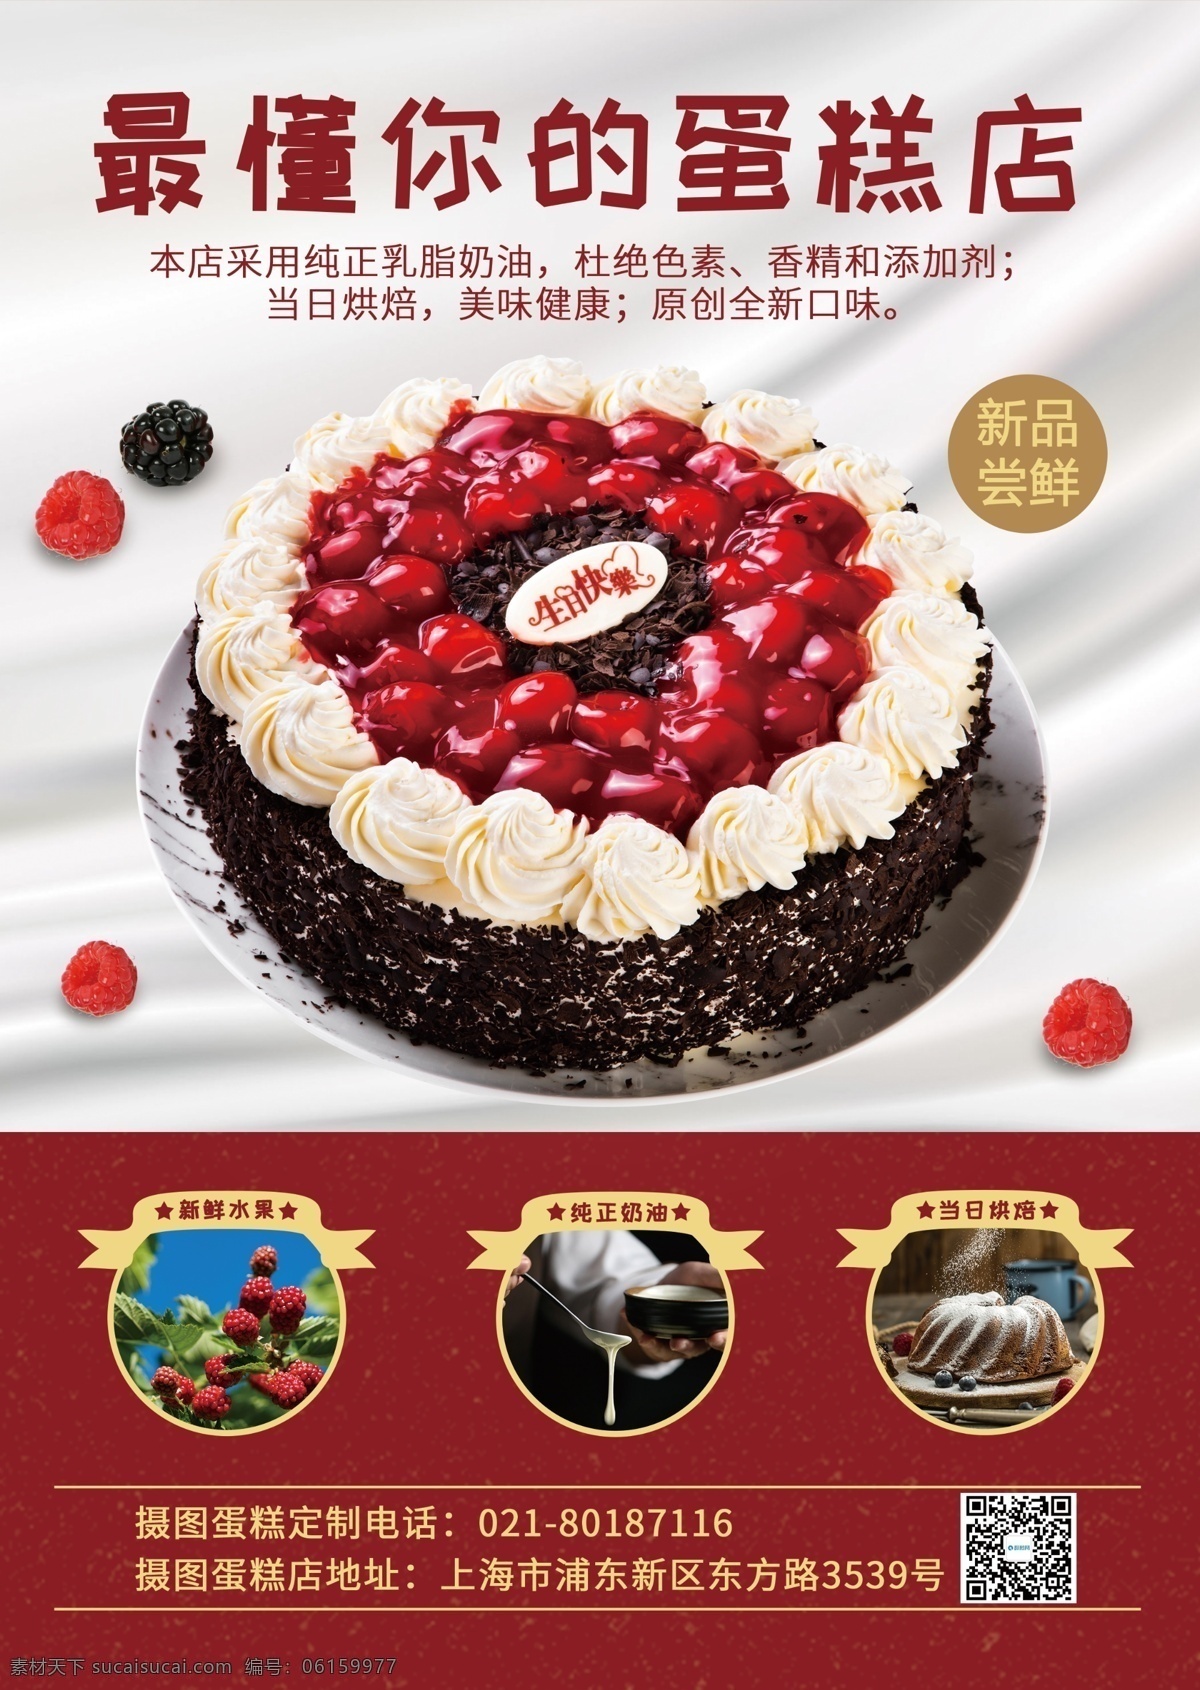 简约 蛋糕 店 新款 促销 宣传单 温馨 甜品店 红色传单 新品上市 促销传单